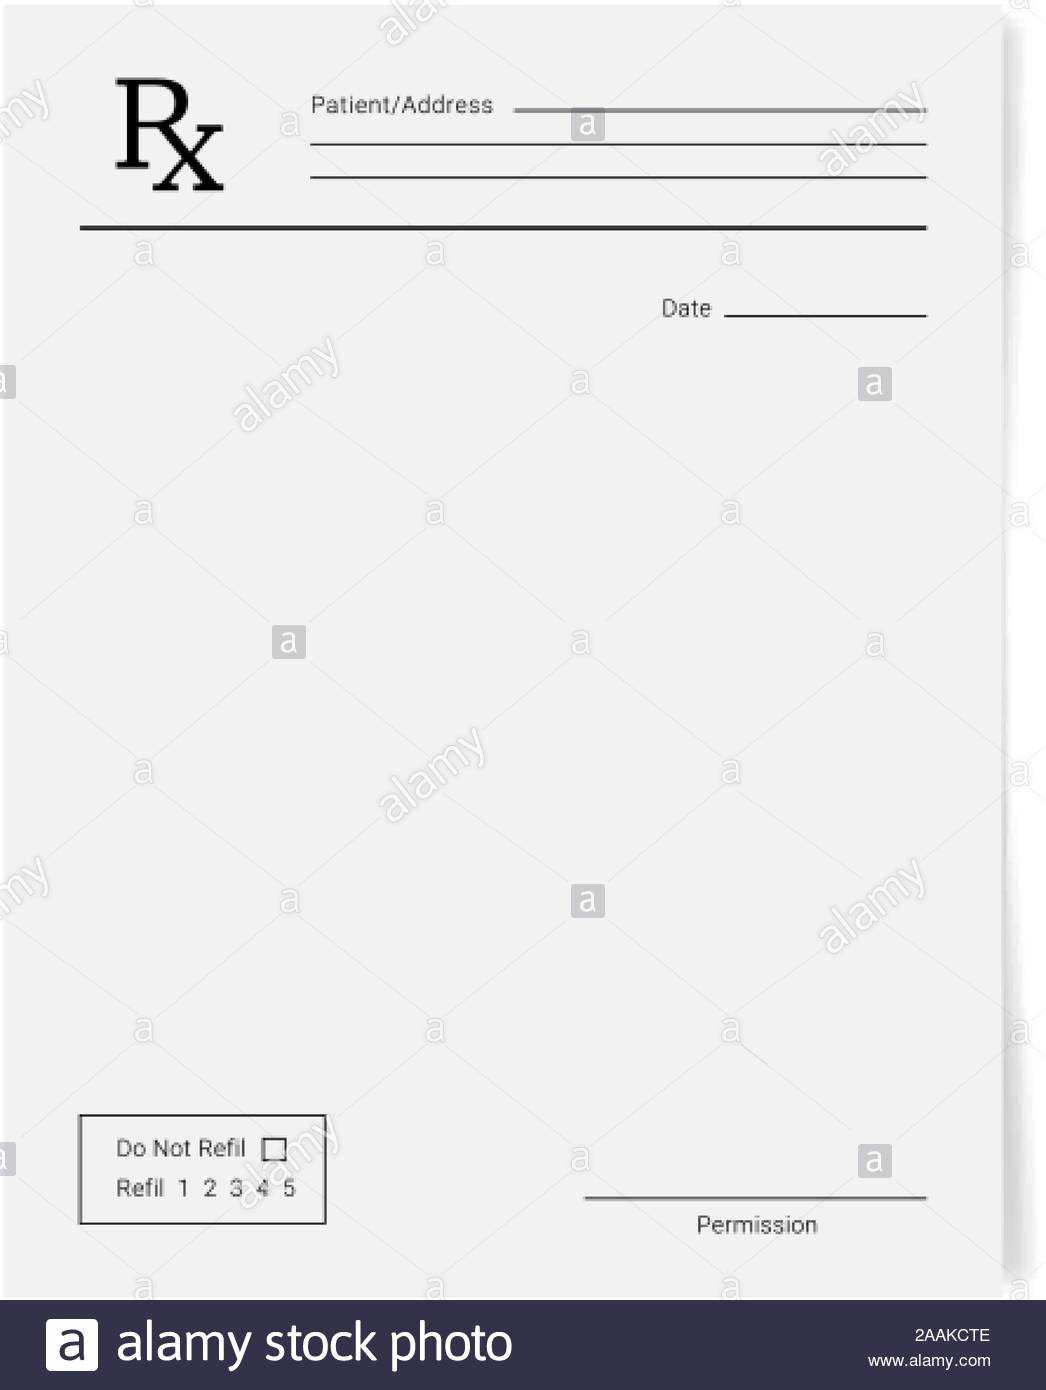 Rx Pad Template. Medical Regular Prescription Form Stock Within Blank Prescription Pad Template